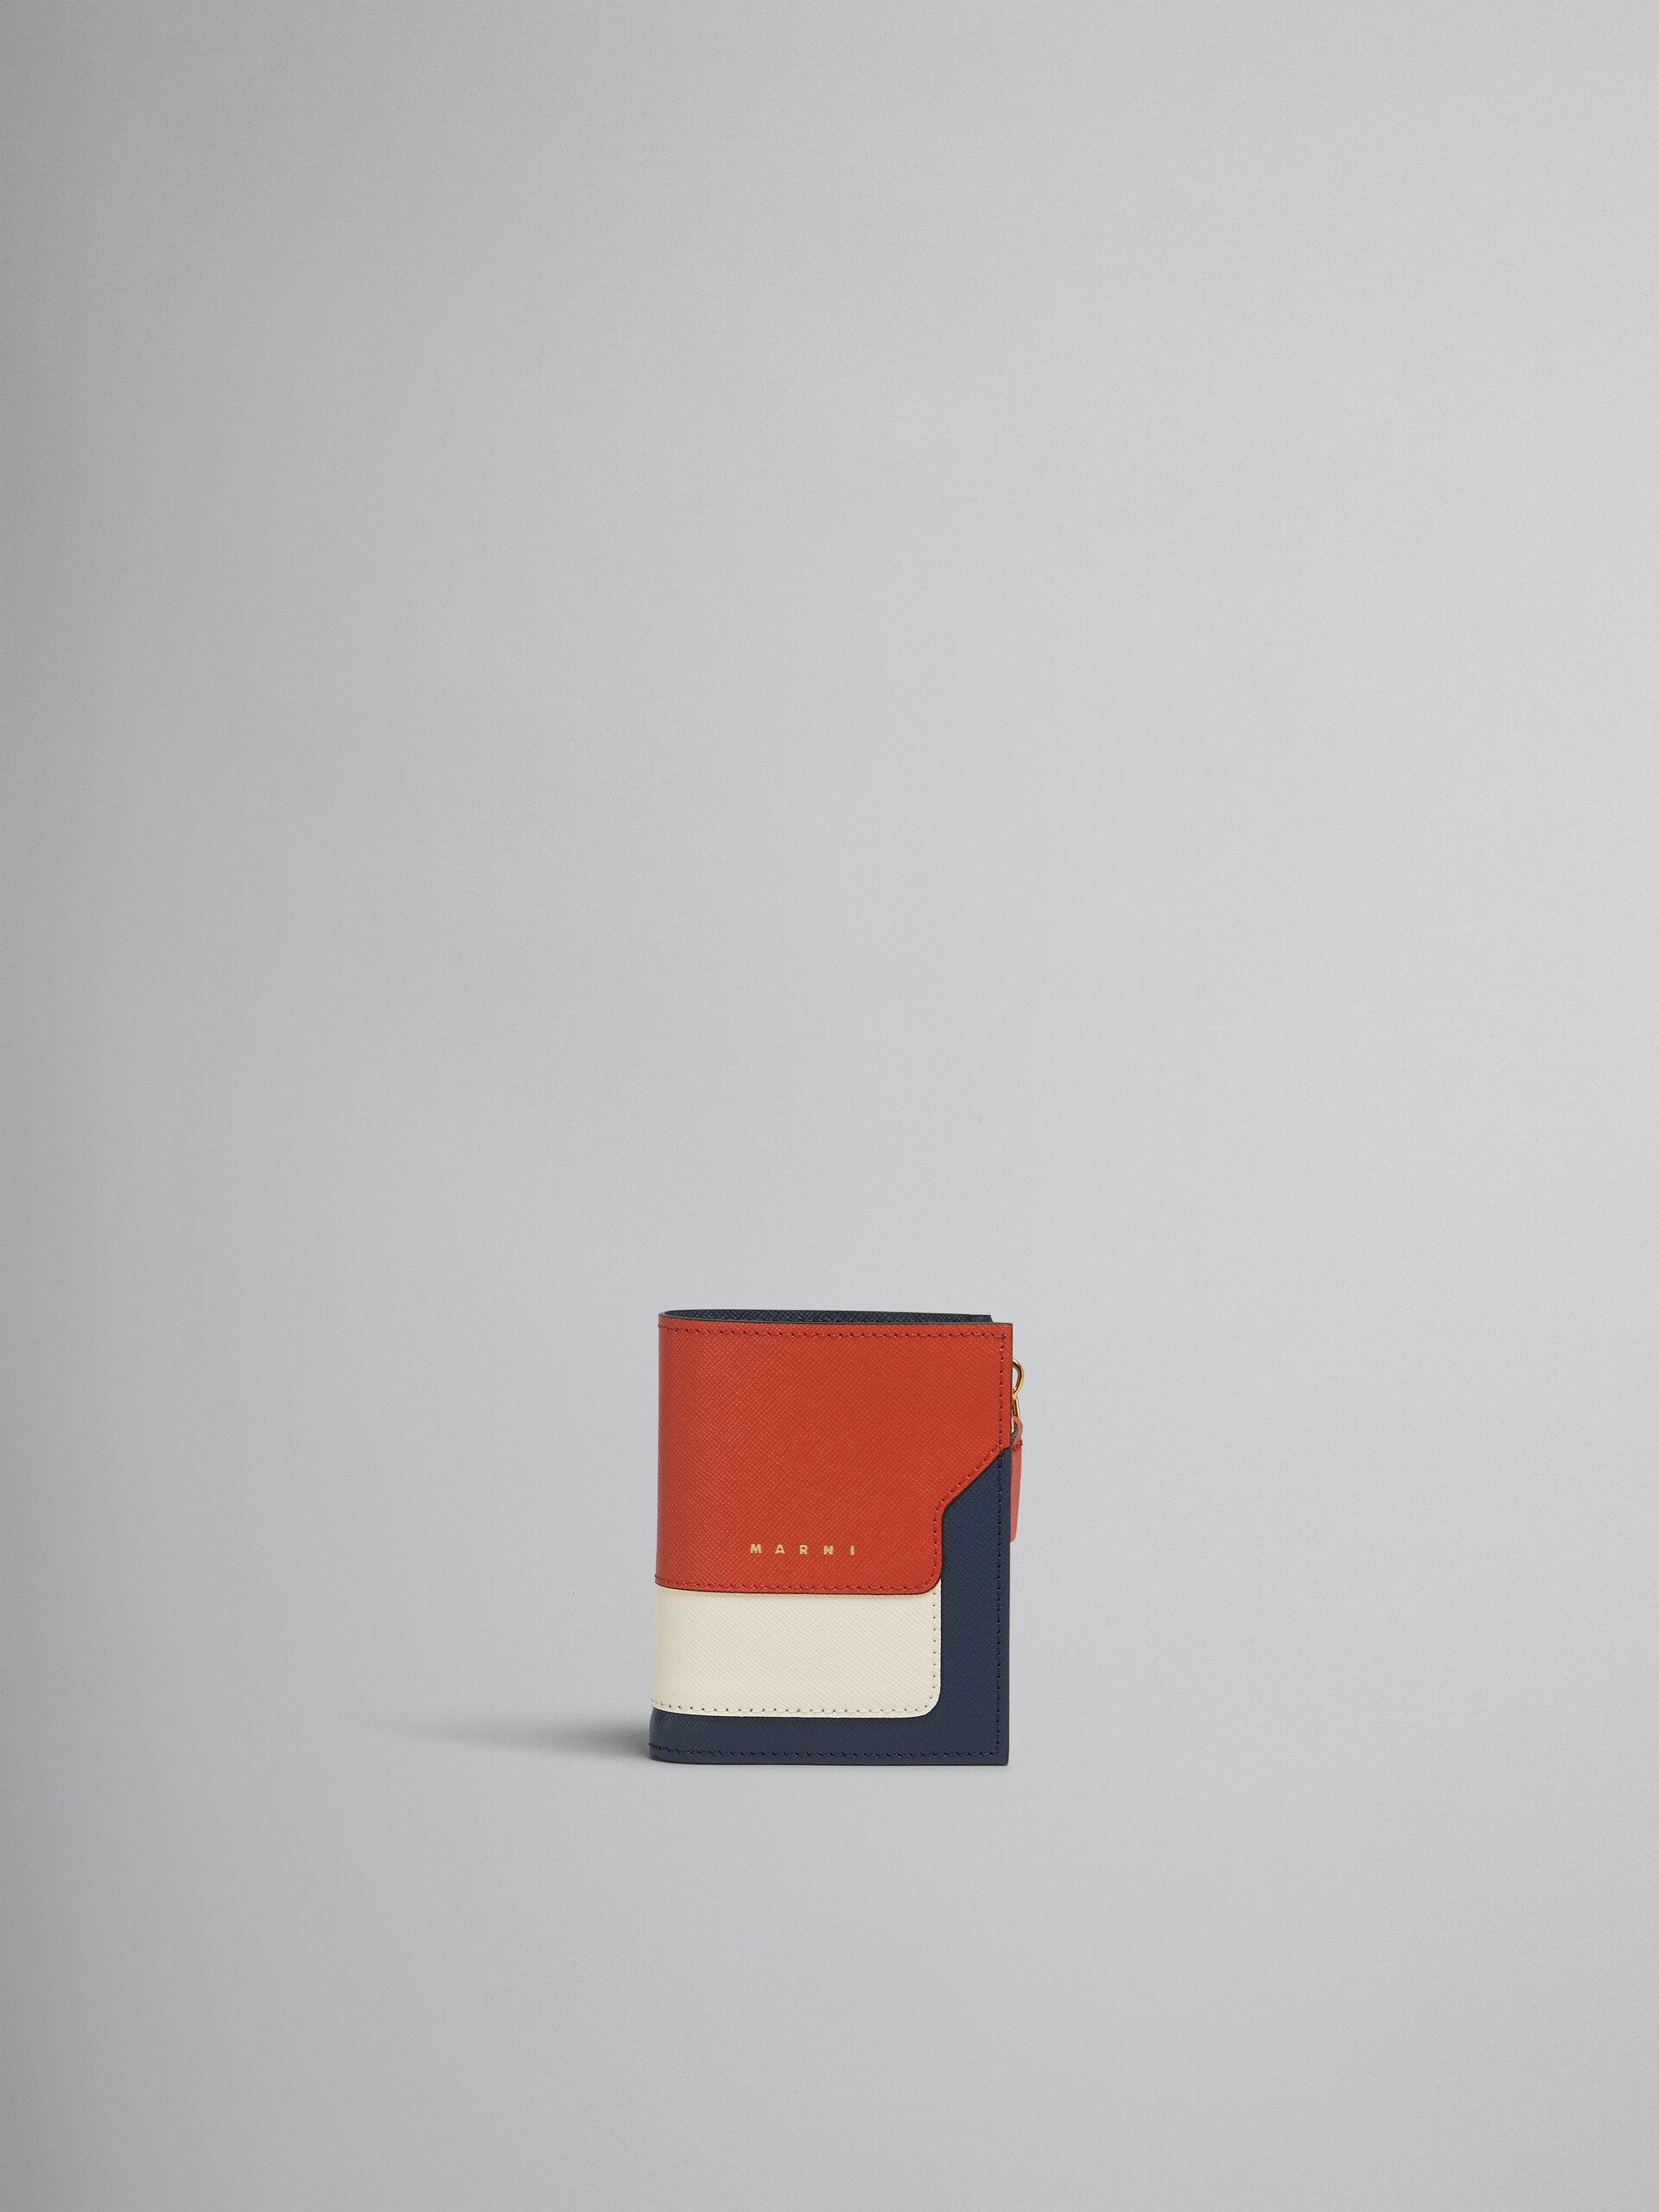 オレンジ クリーム ディープブルー サフィアーノレザー製 二つ折りウォレット - 財布 - Image 1